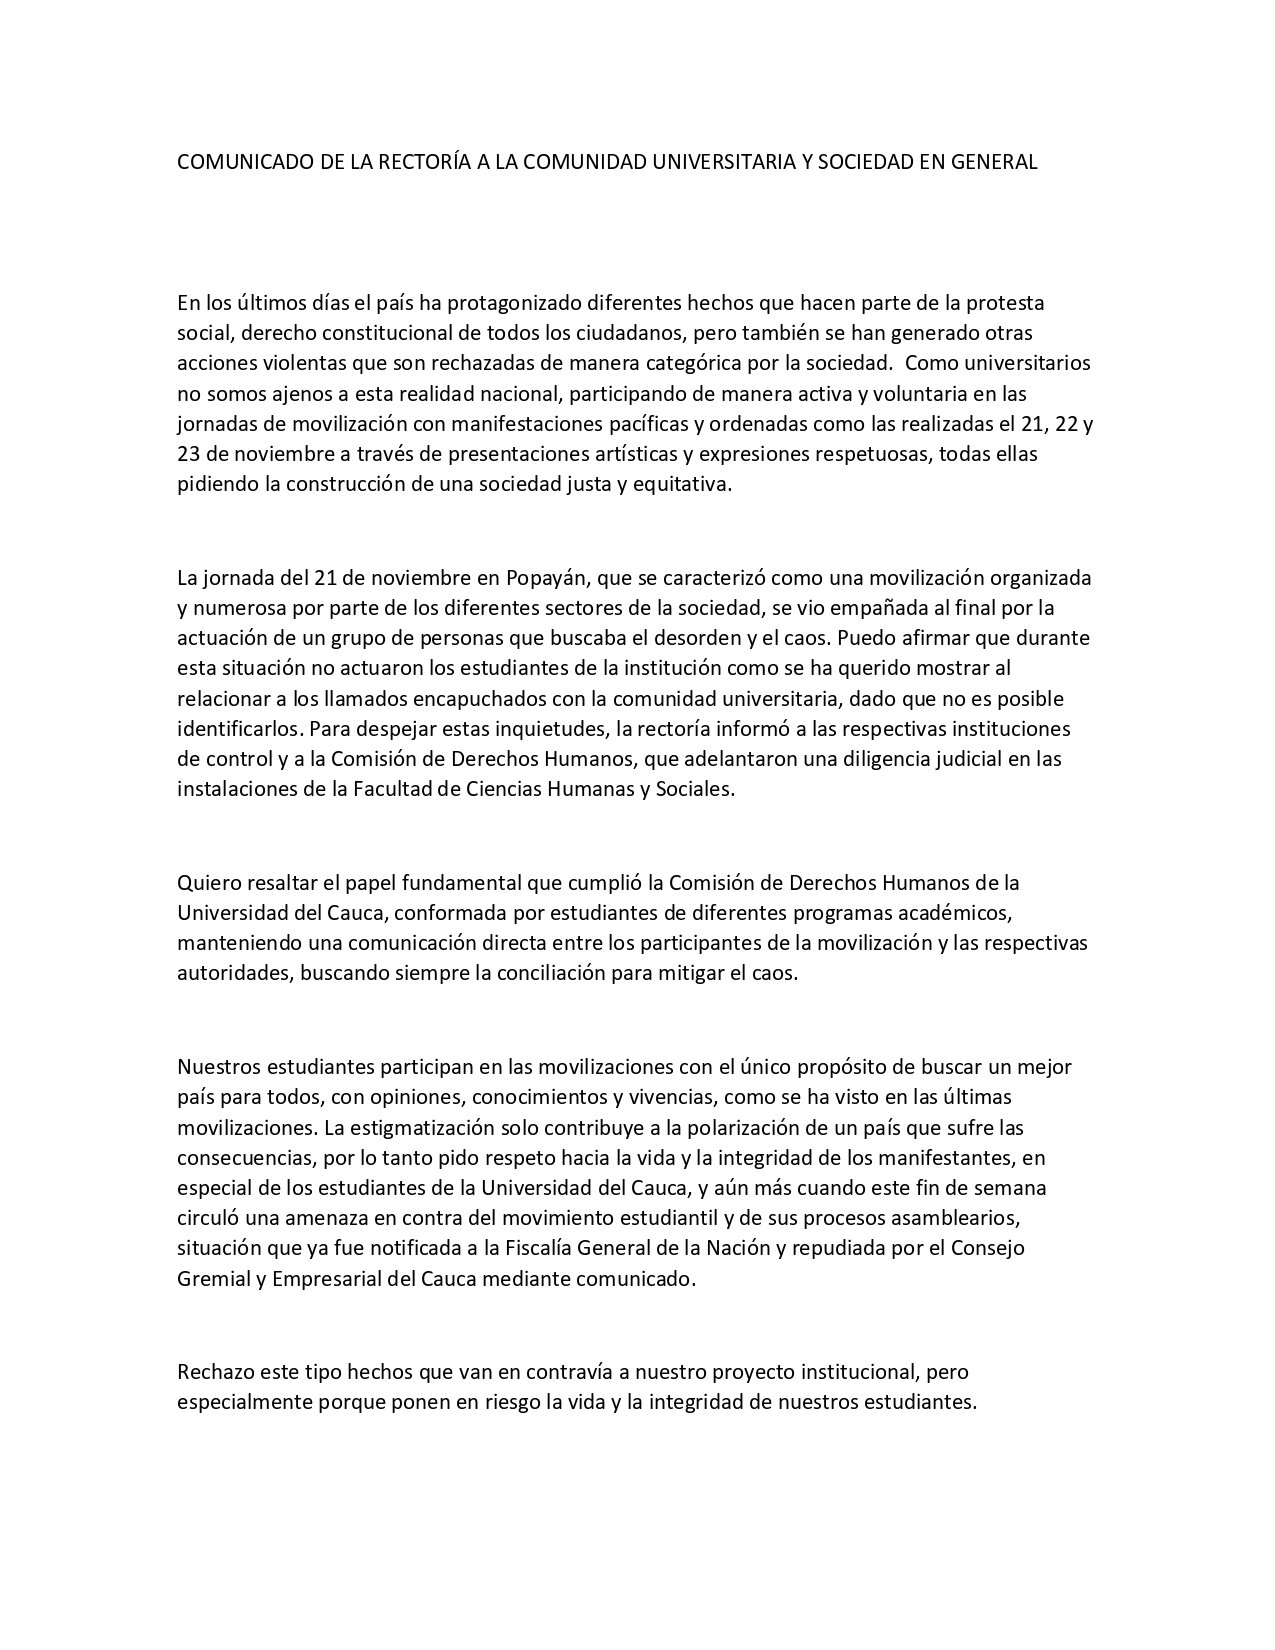 COMUNICADO DE LA RECTORÍA A LA COMUNIDAD UNIVERSITARIA Y SOCIEDAD EN GENERAL convertido page 0001